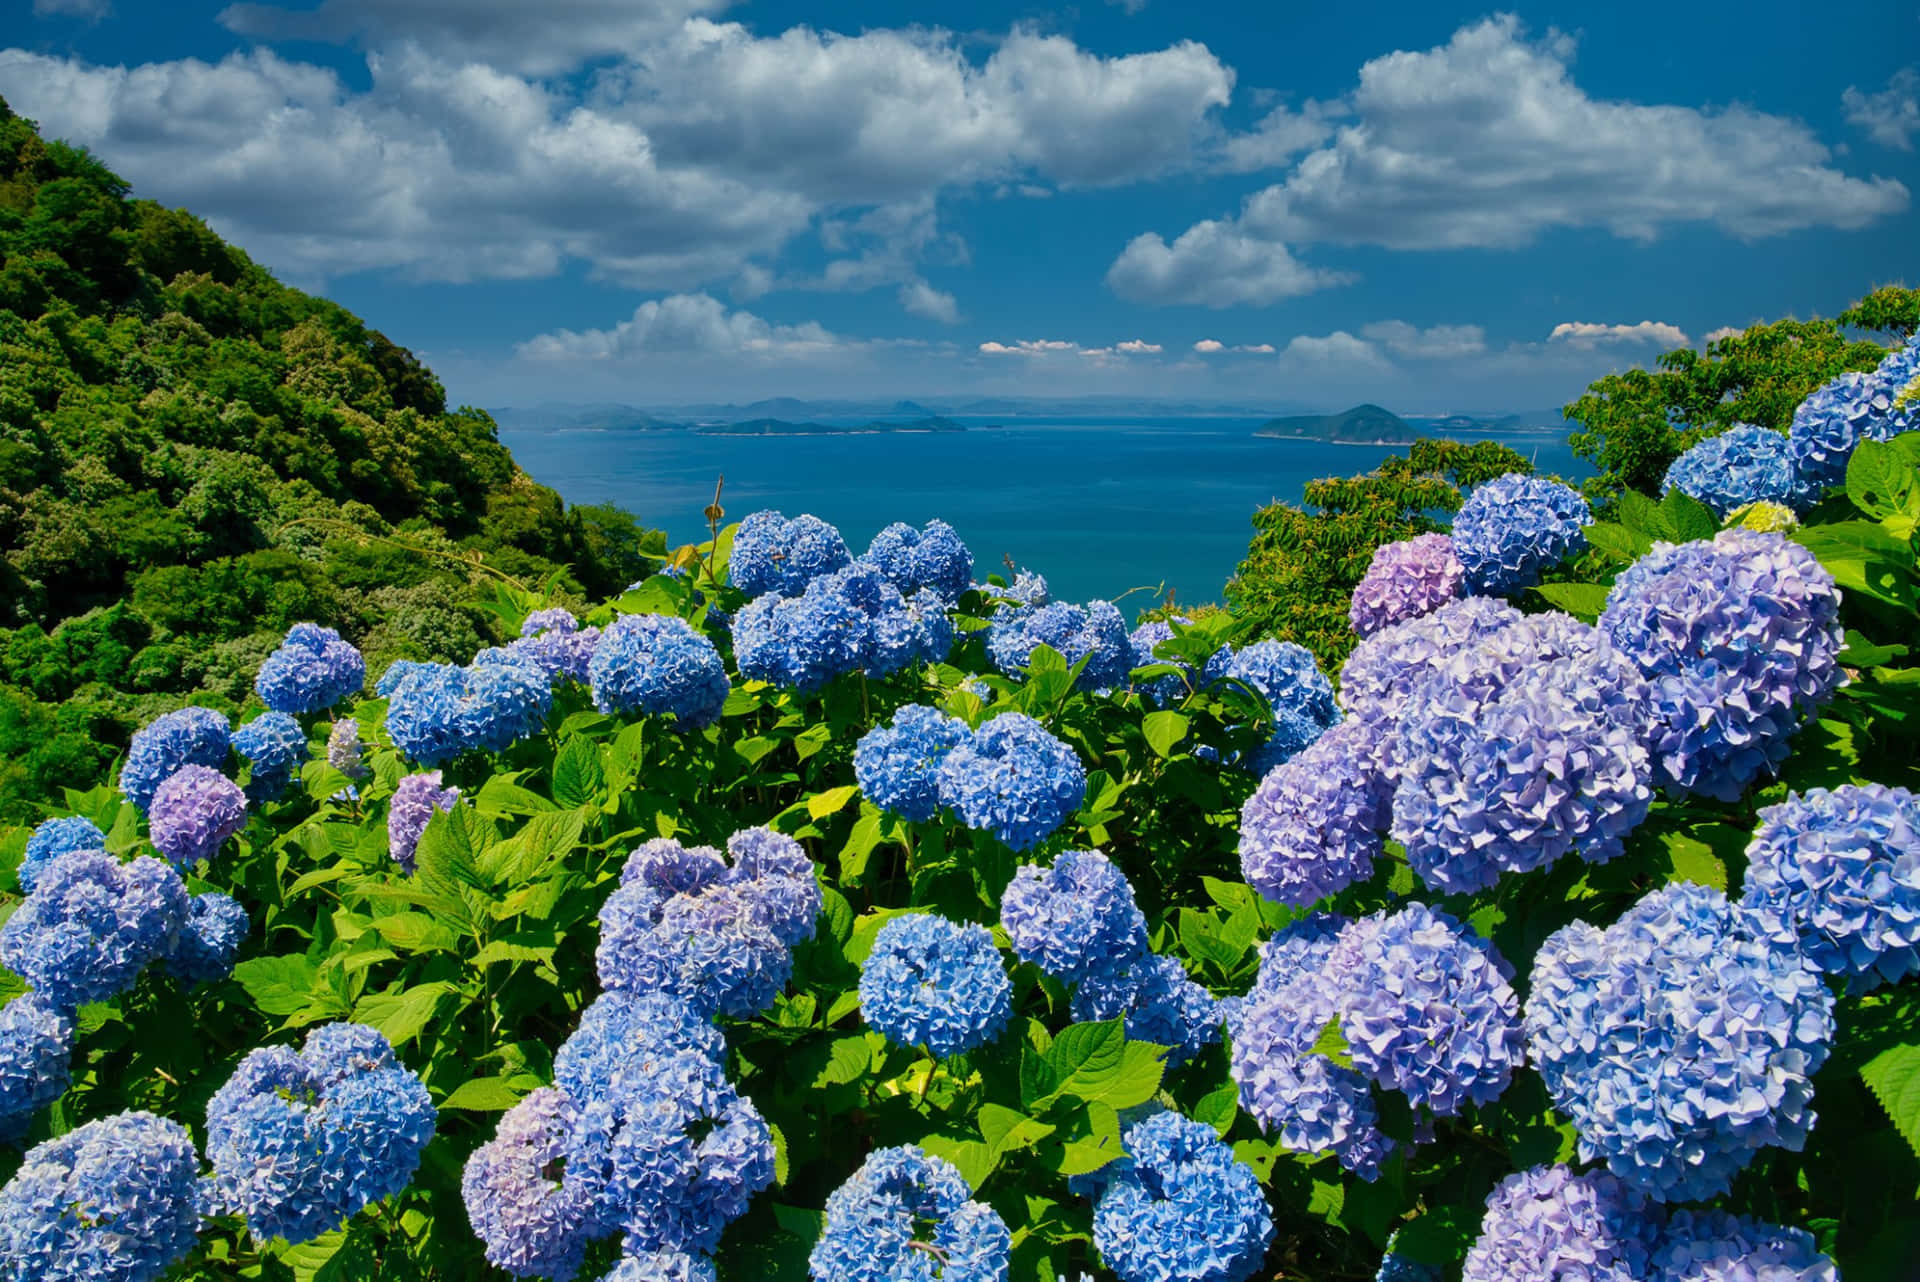 Fondode Pantalla De Flores De Arbustos De Hortensias Moradas Y Azules.